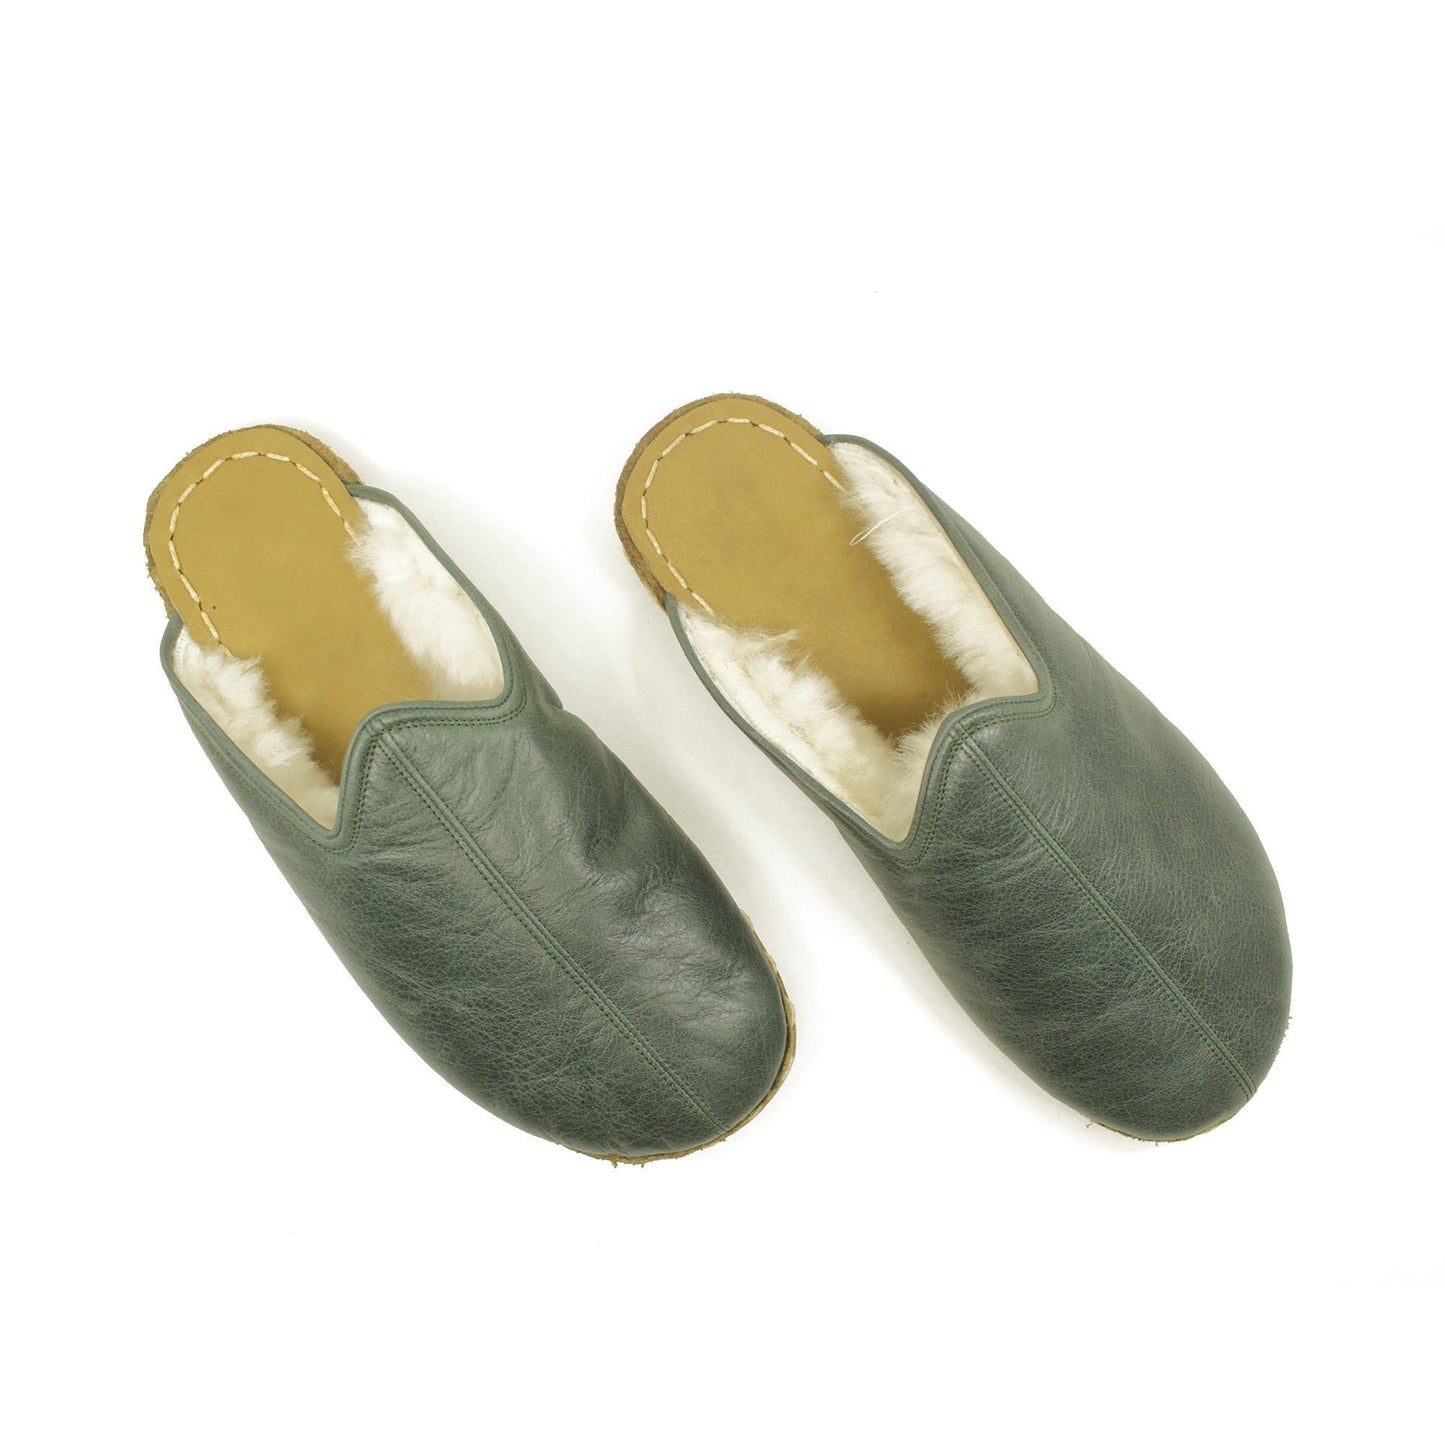 Sheepskin slippers - Winter Slippers - Barefoot Slipper - Close Toed Slippers - Toledo Green Leather - Copper Rivet - For Women